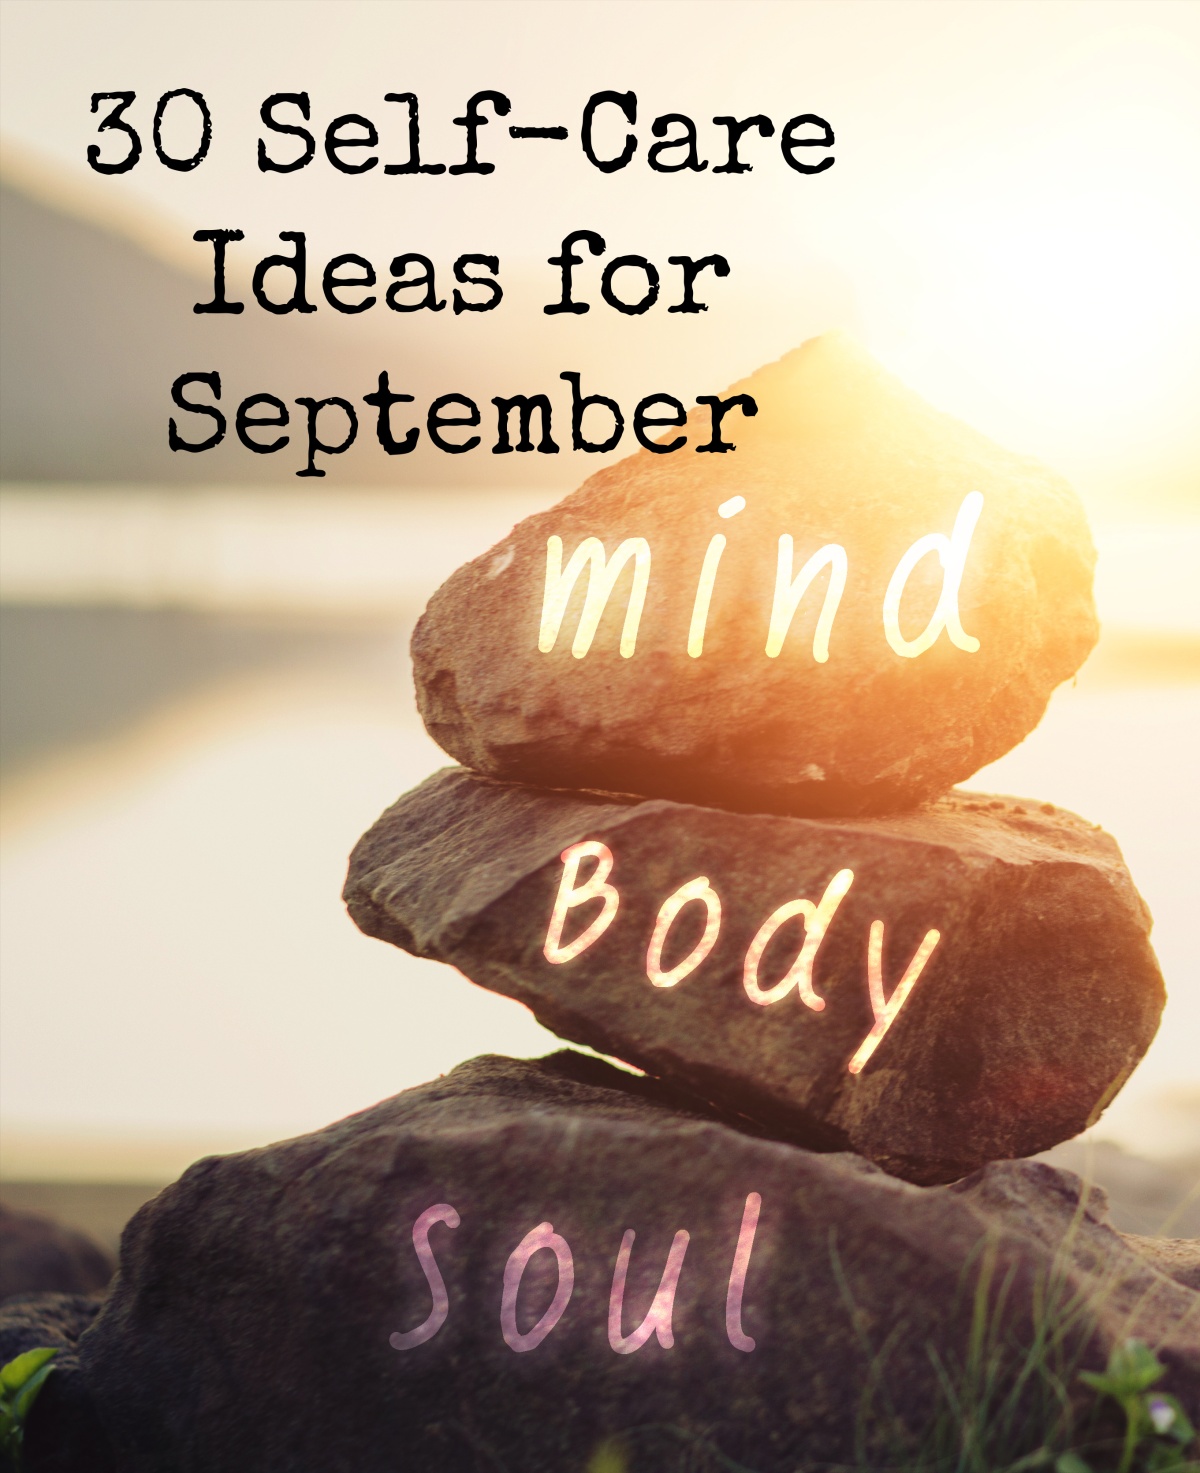 30 Self-Care Ideas for September